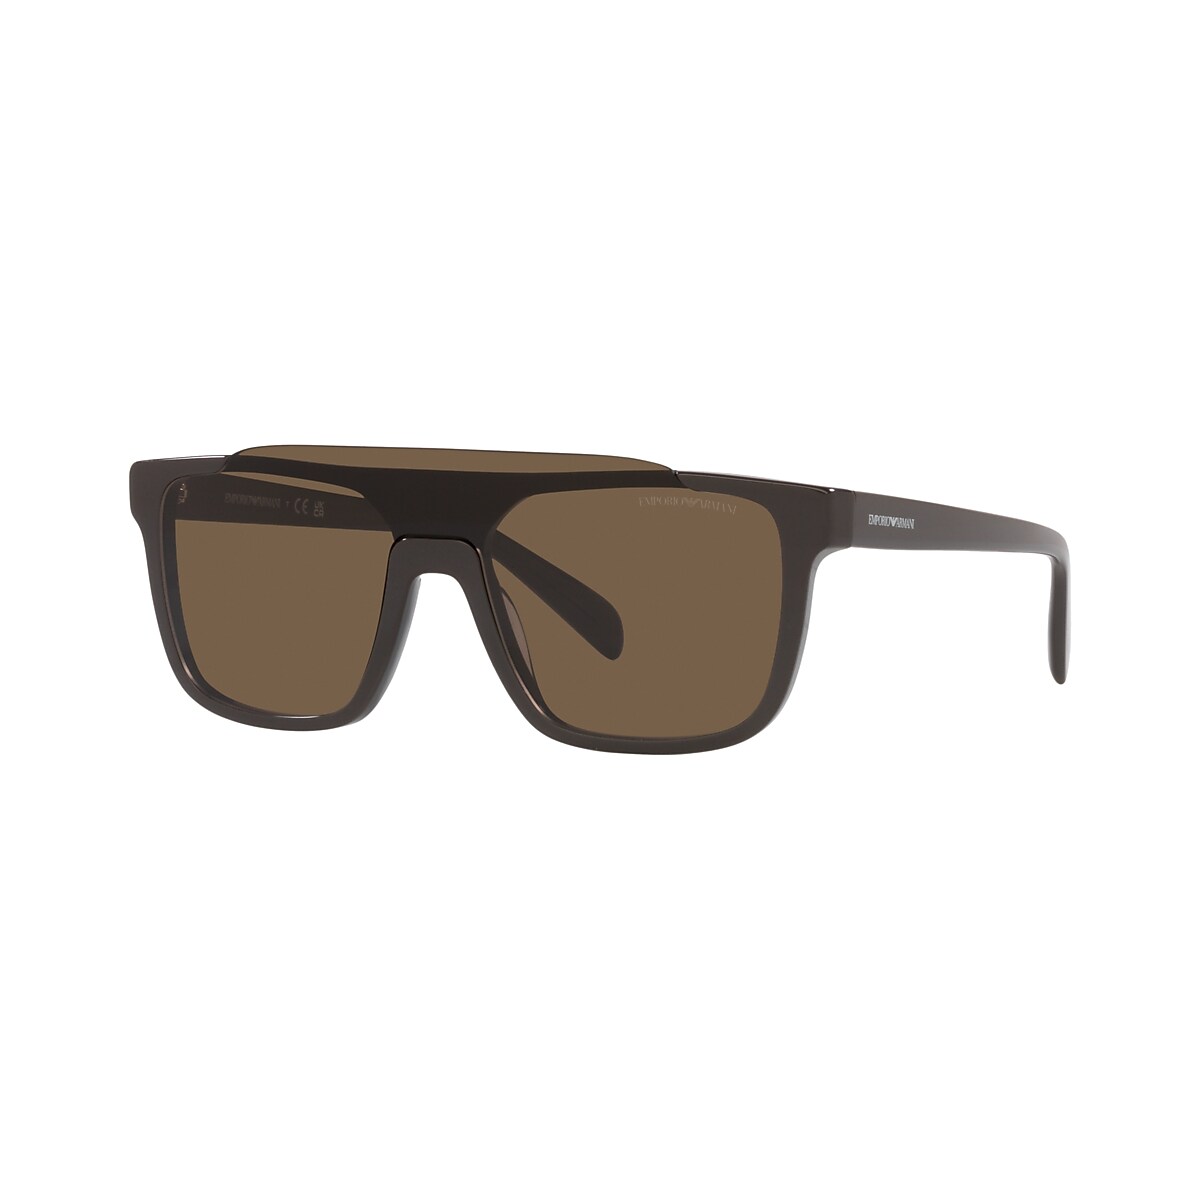 EMPORIO ARMANI EA4193 Shiny Grey - Man Sunglasses, Dark Brown Lens